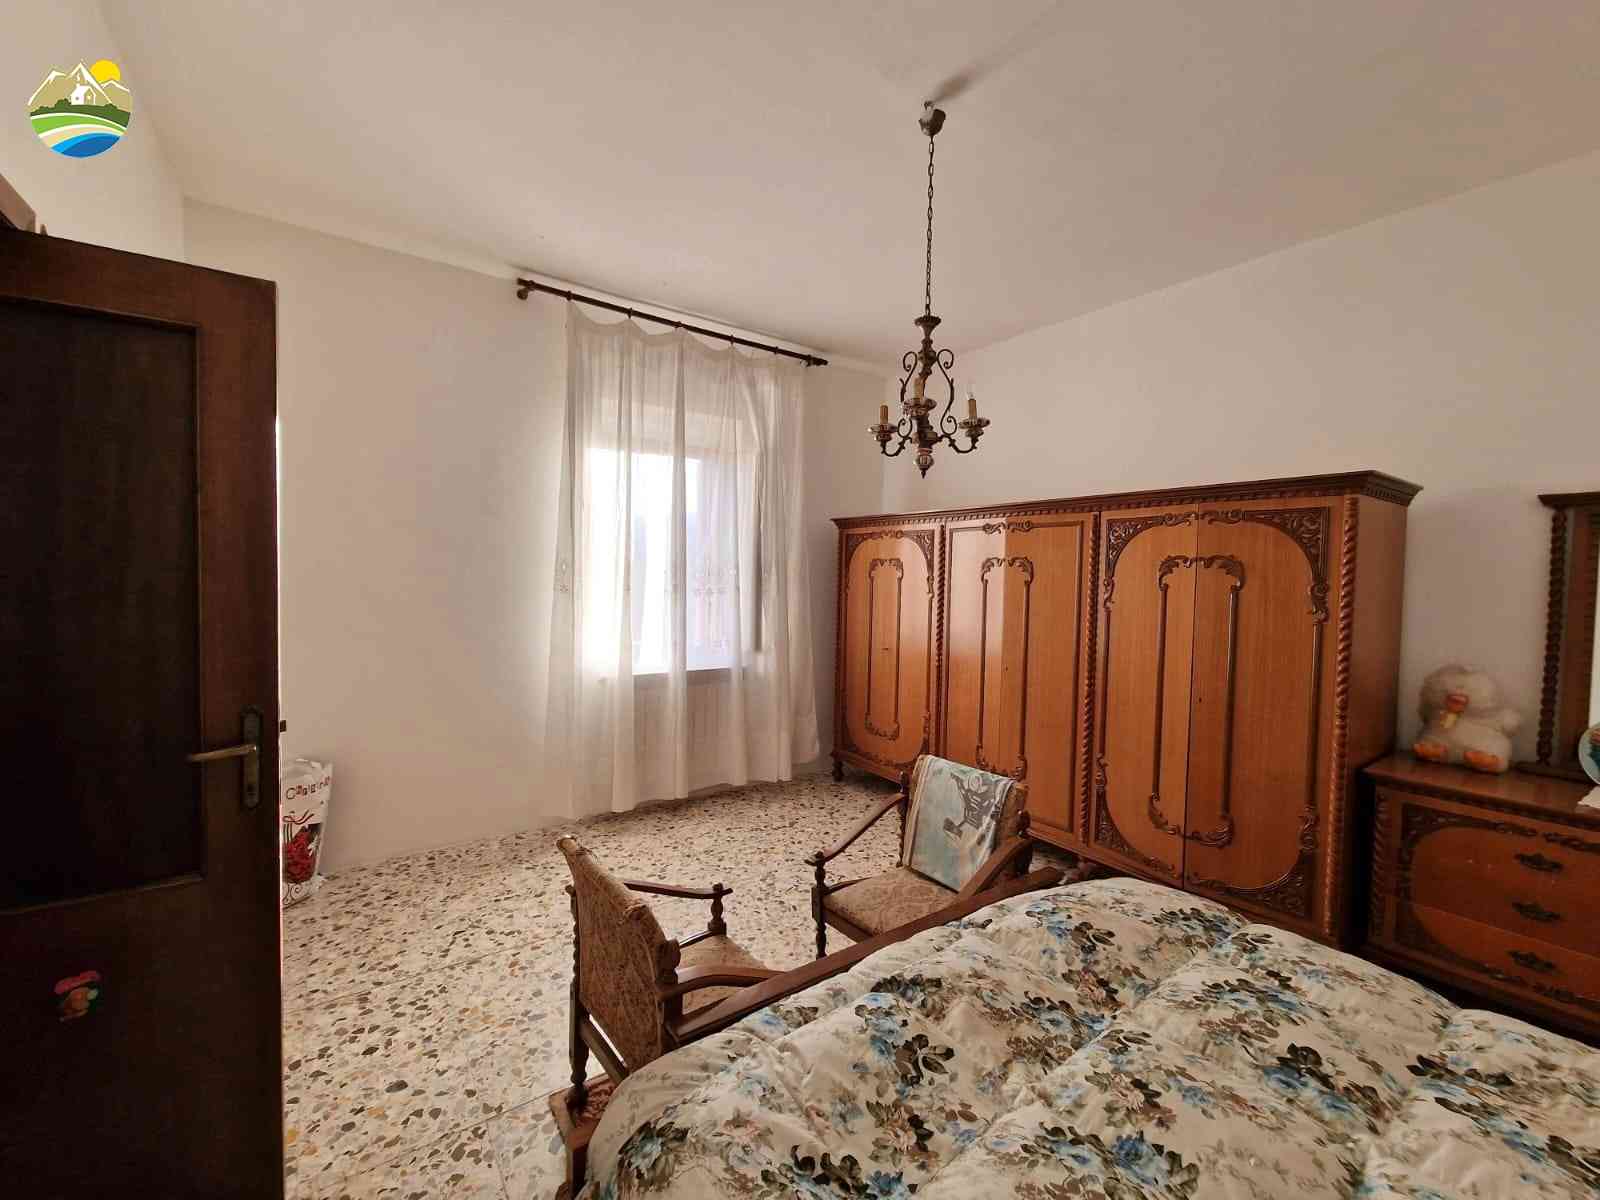 Casa di campagna Casa di campagna in vendita Cellino Attanasio (TE), Tenuta Vallerossa - Cellino Attanasio - EUR 238.752 710